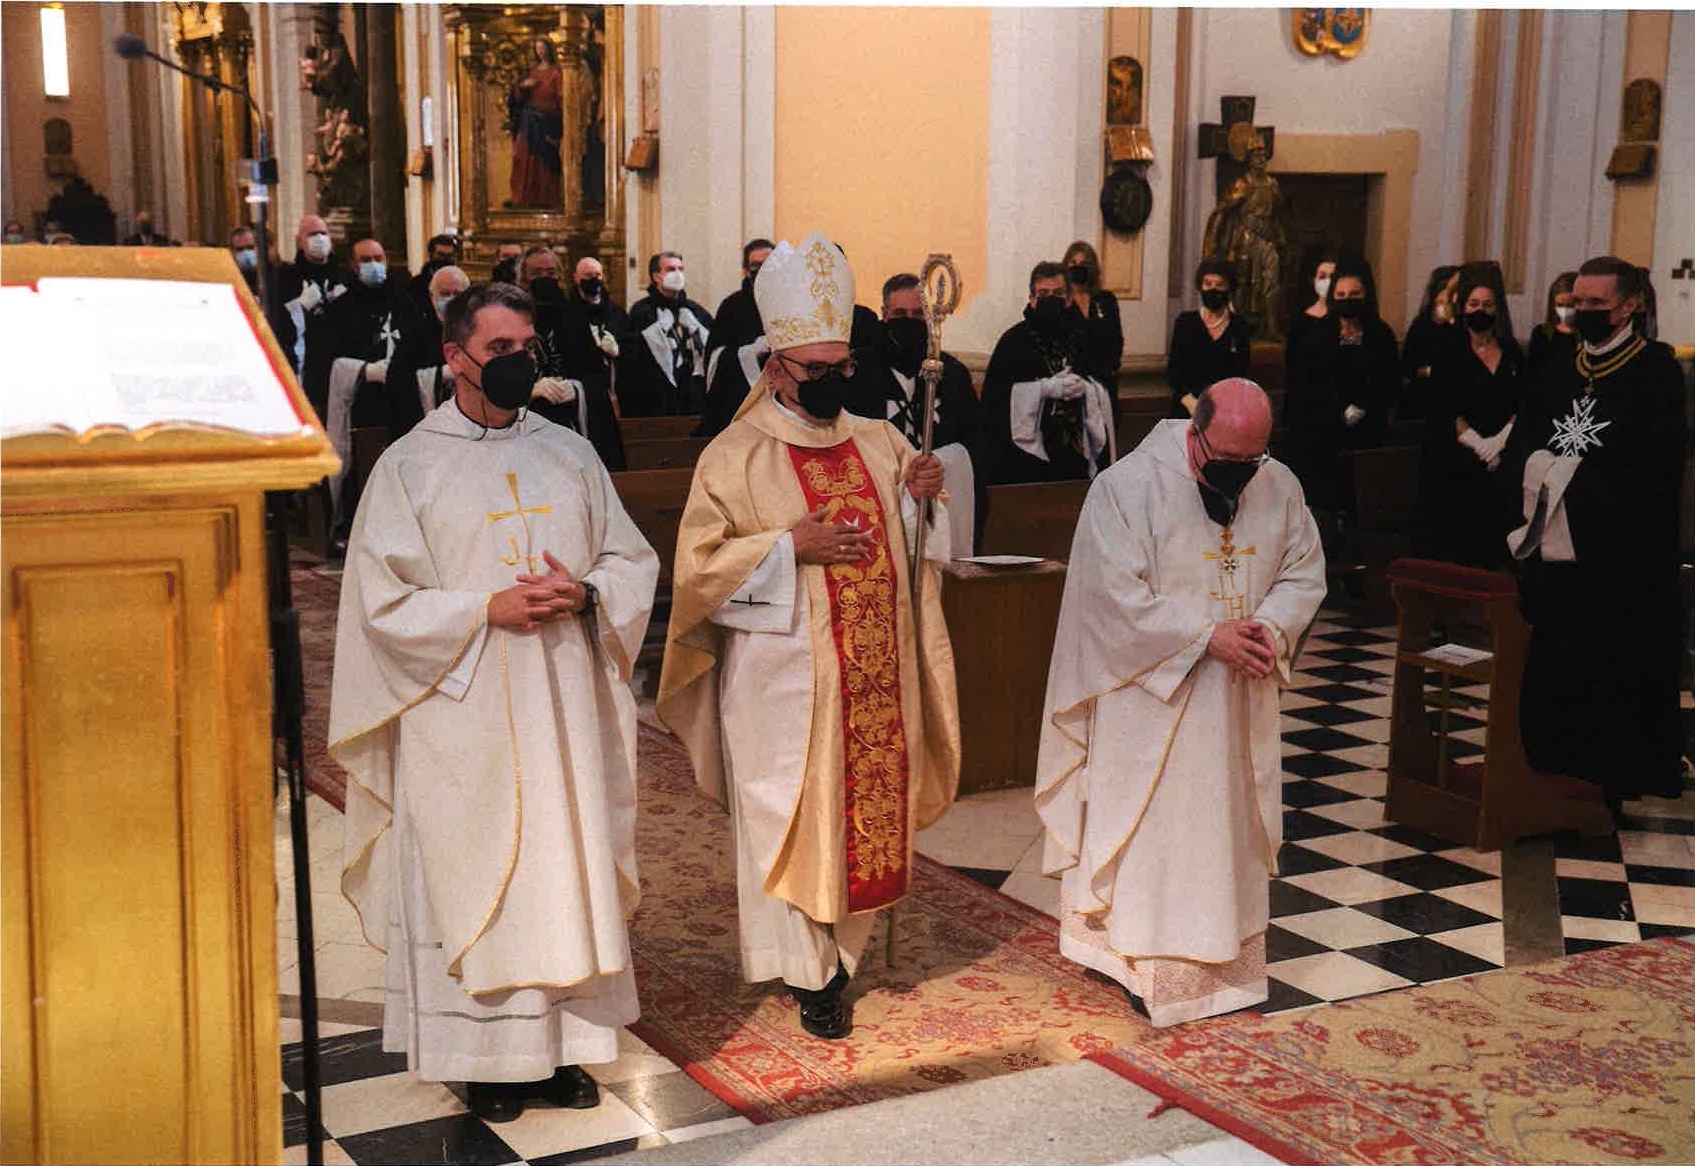 Mass Saint John 2021 Order of Malta